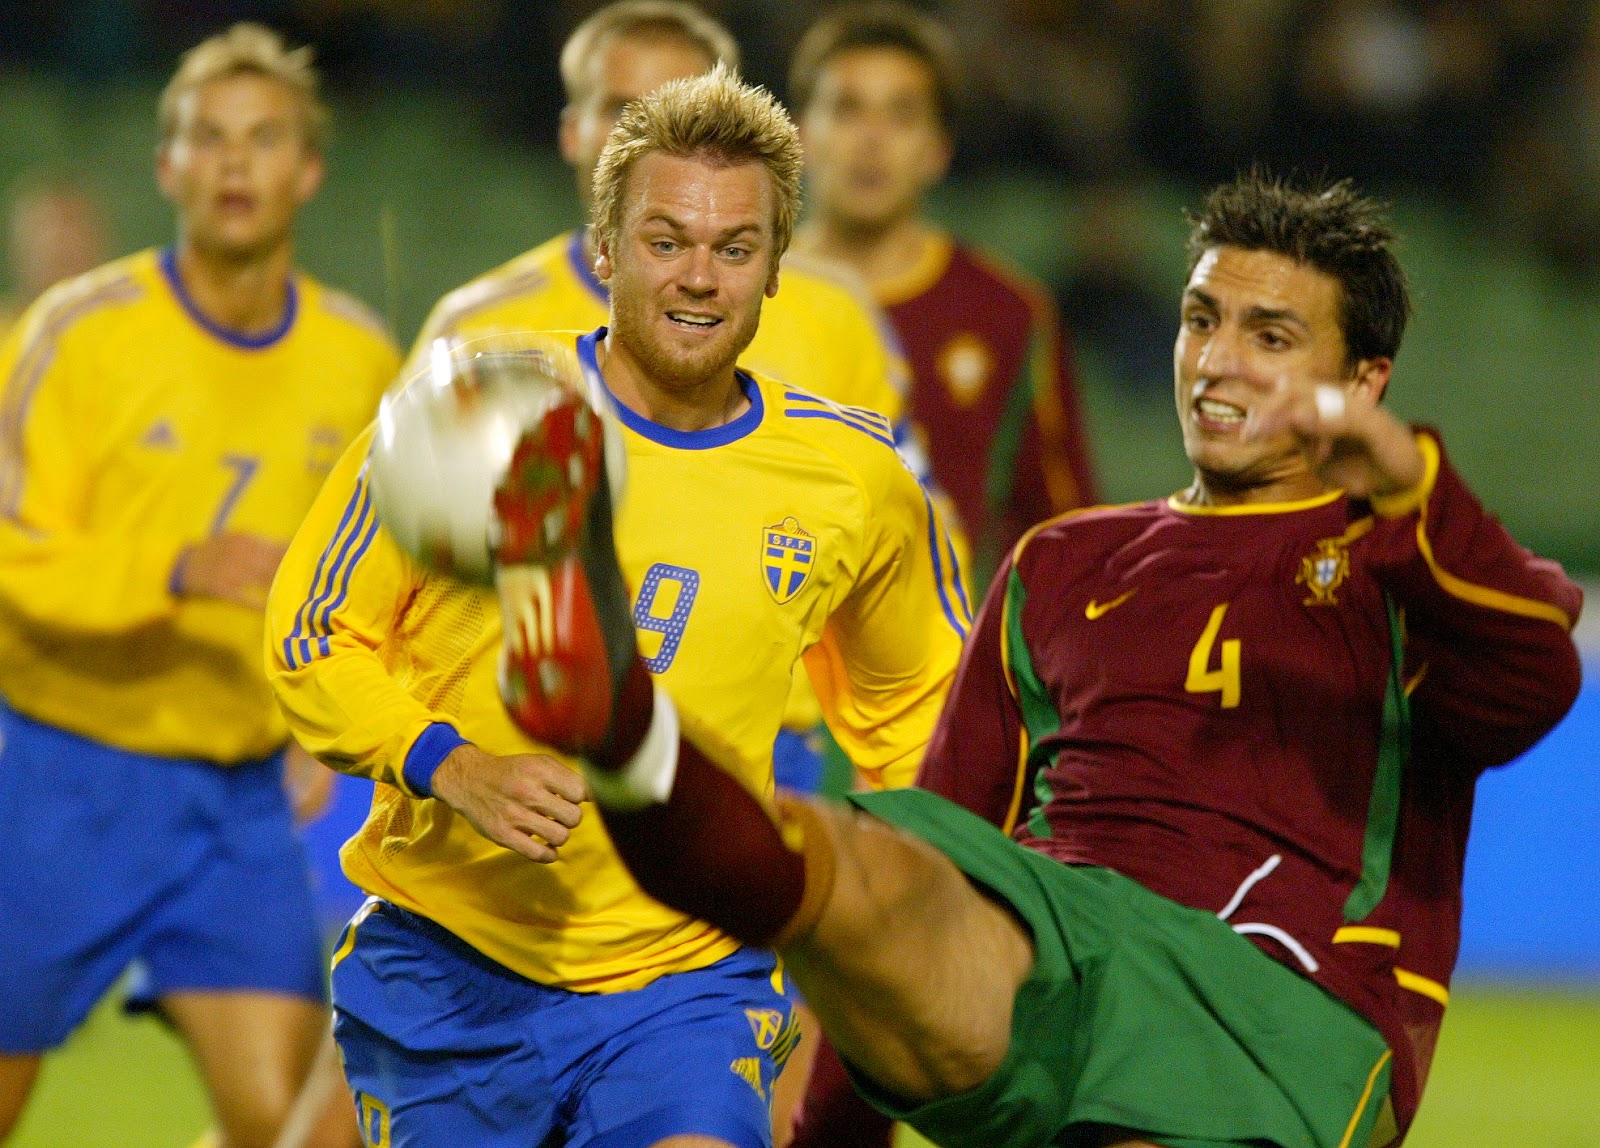 Suécia 2-3 Portugal - Play Off Mundial 2014 ○ JOGOS HISTÓRICOS 